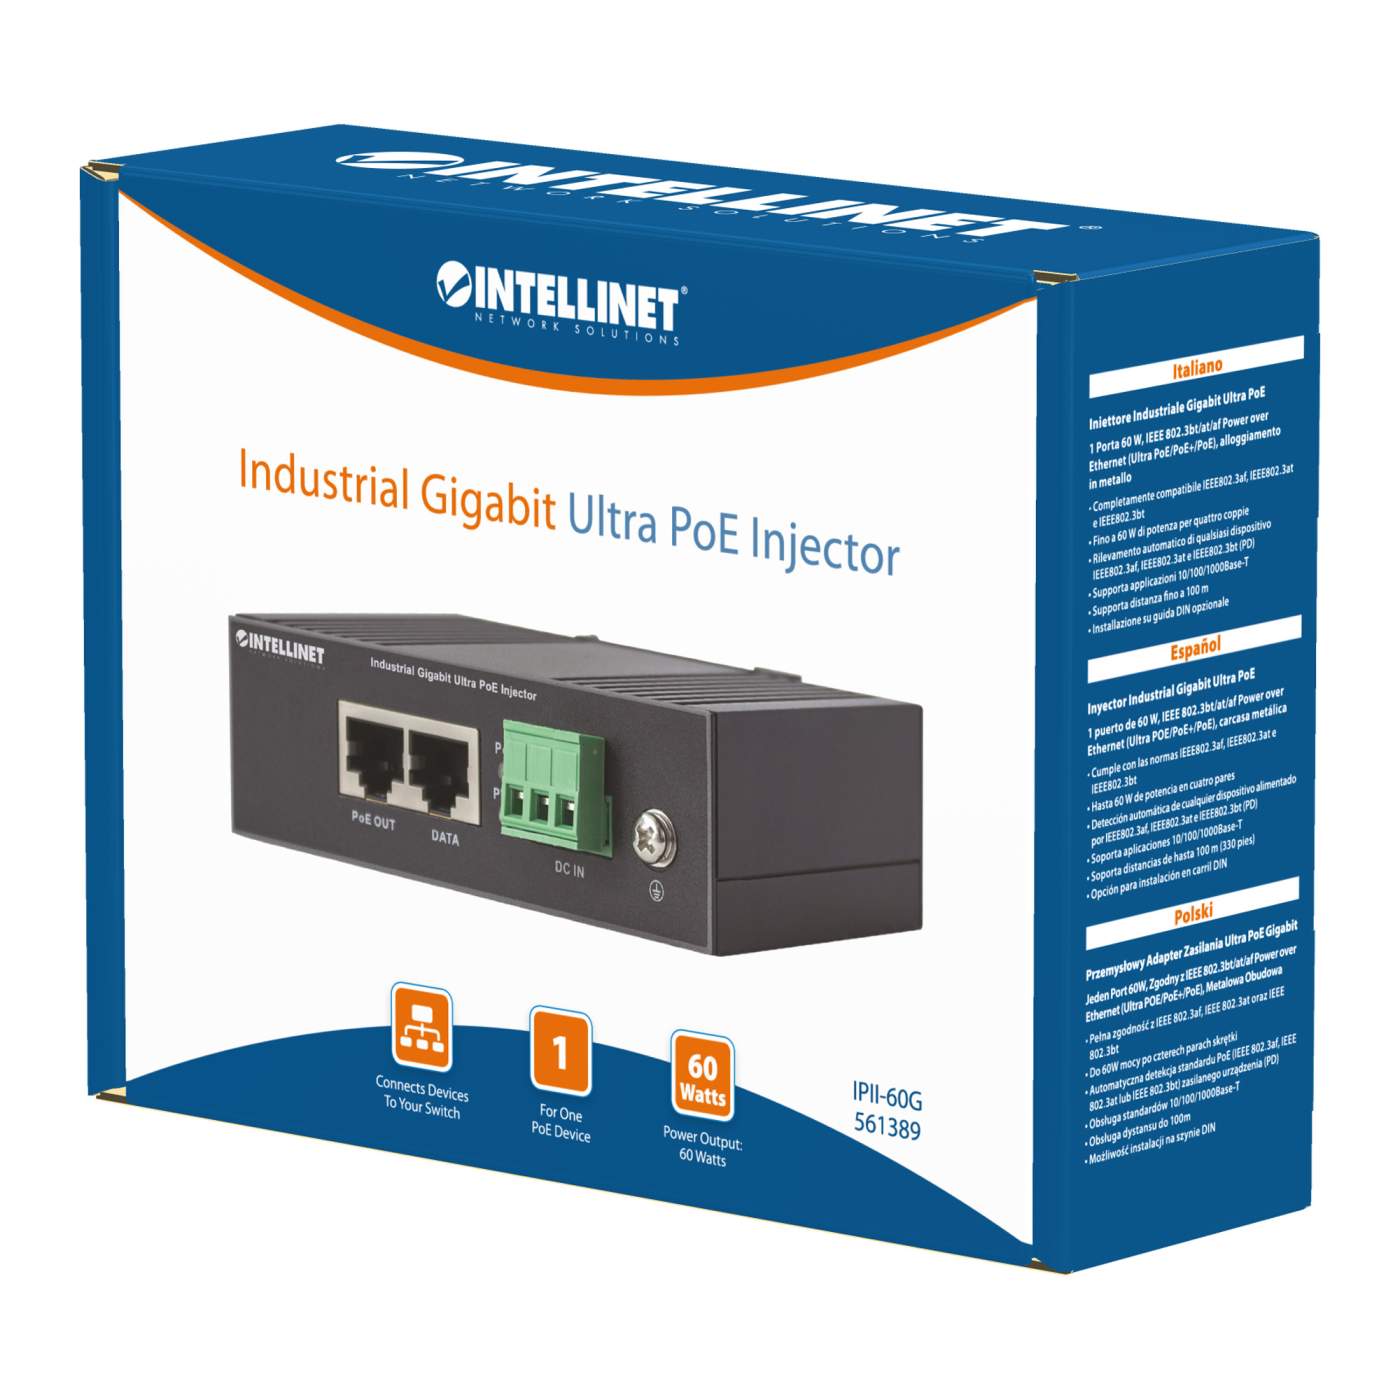 Intellinet Industrial Gigabit Ultra PoE Injector